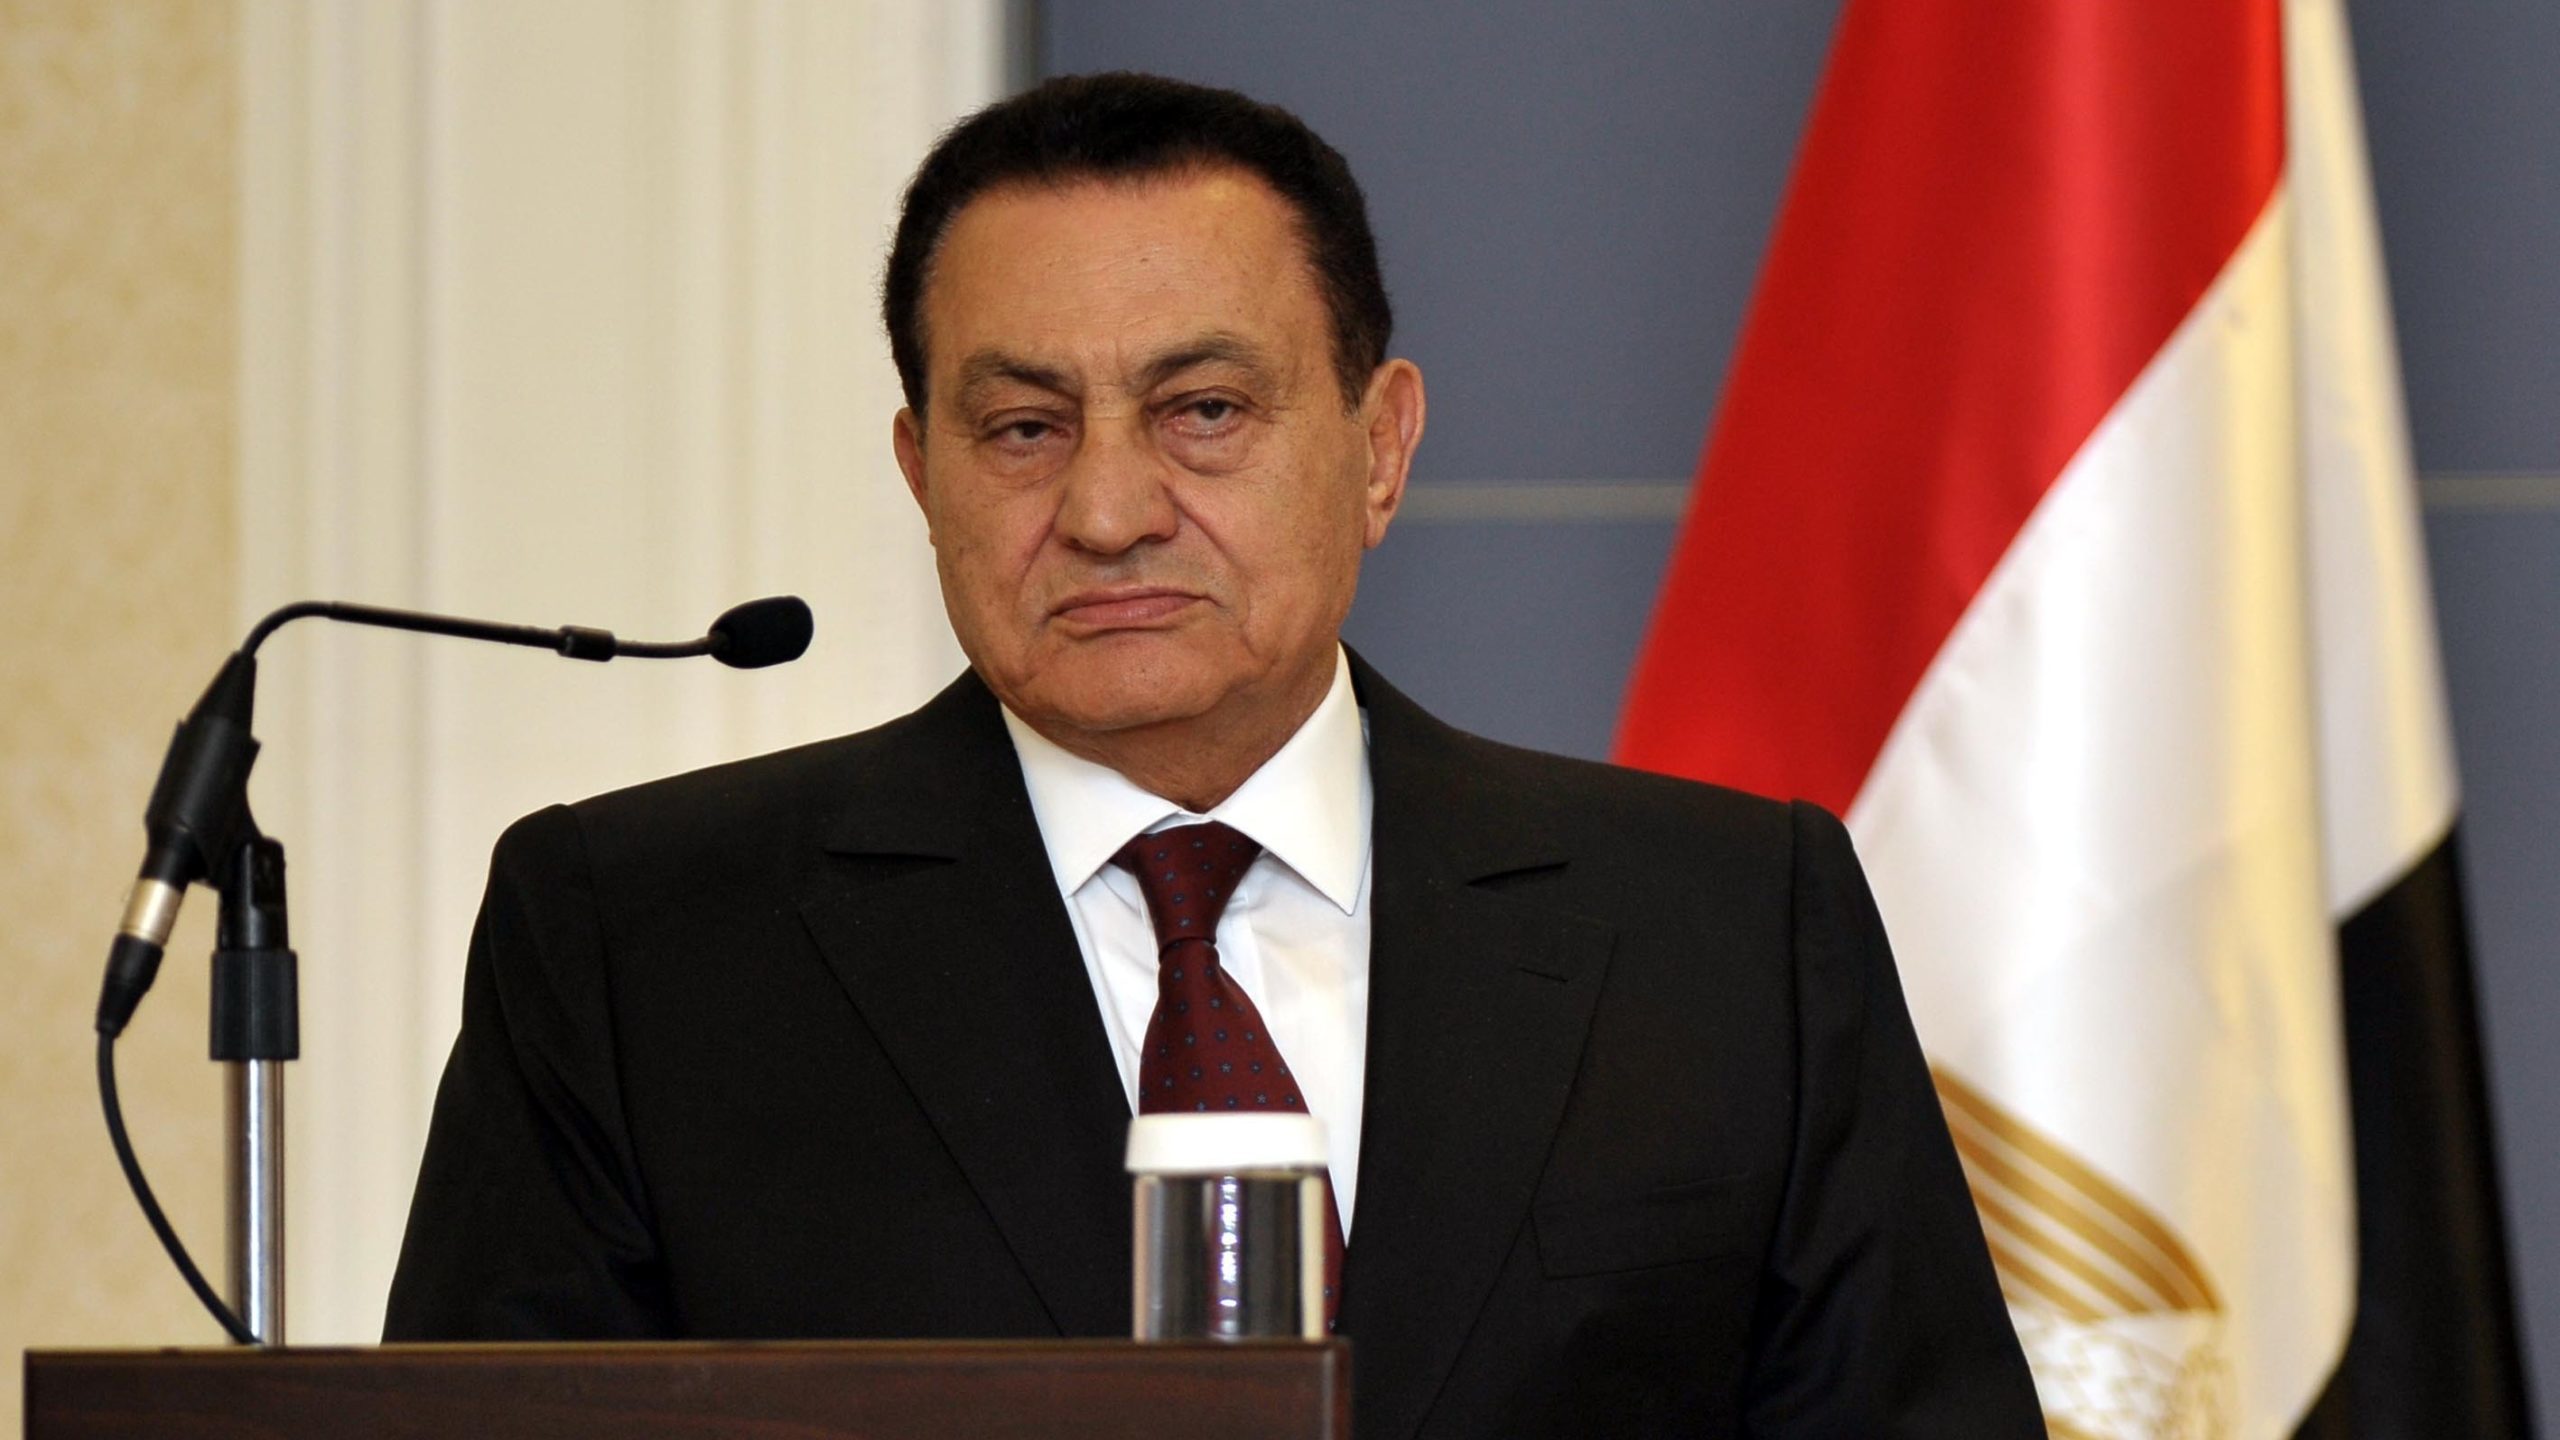 Egypt’s Former President Hosni Mubarak Dies at 91